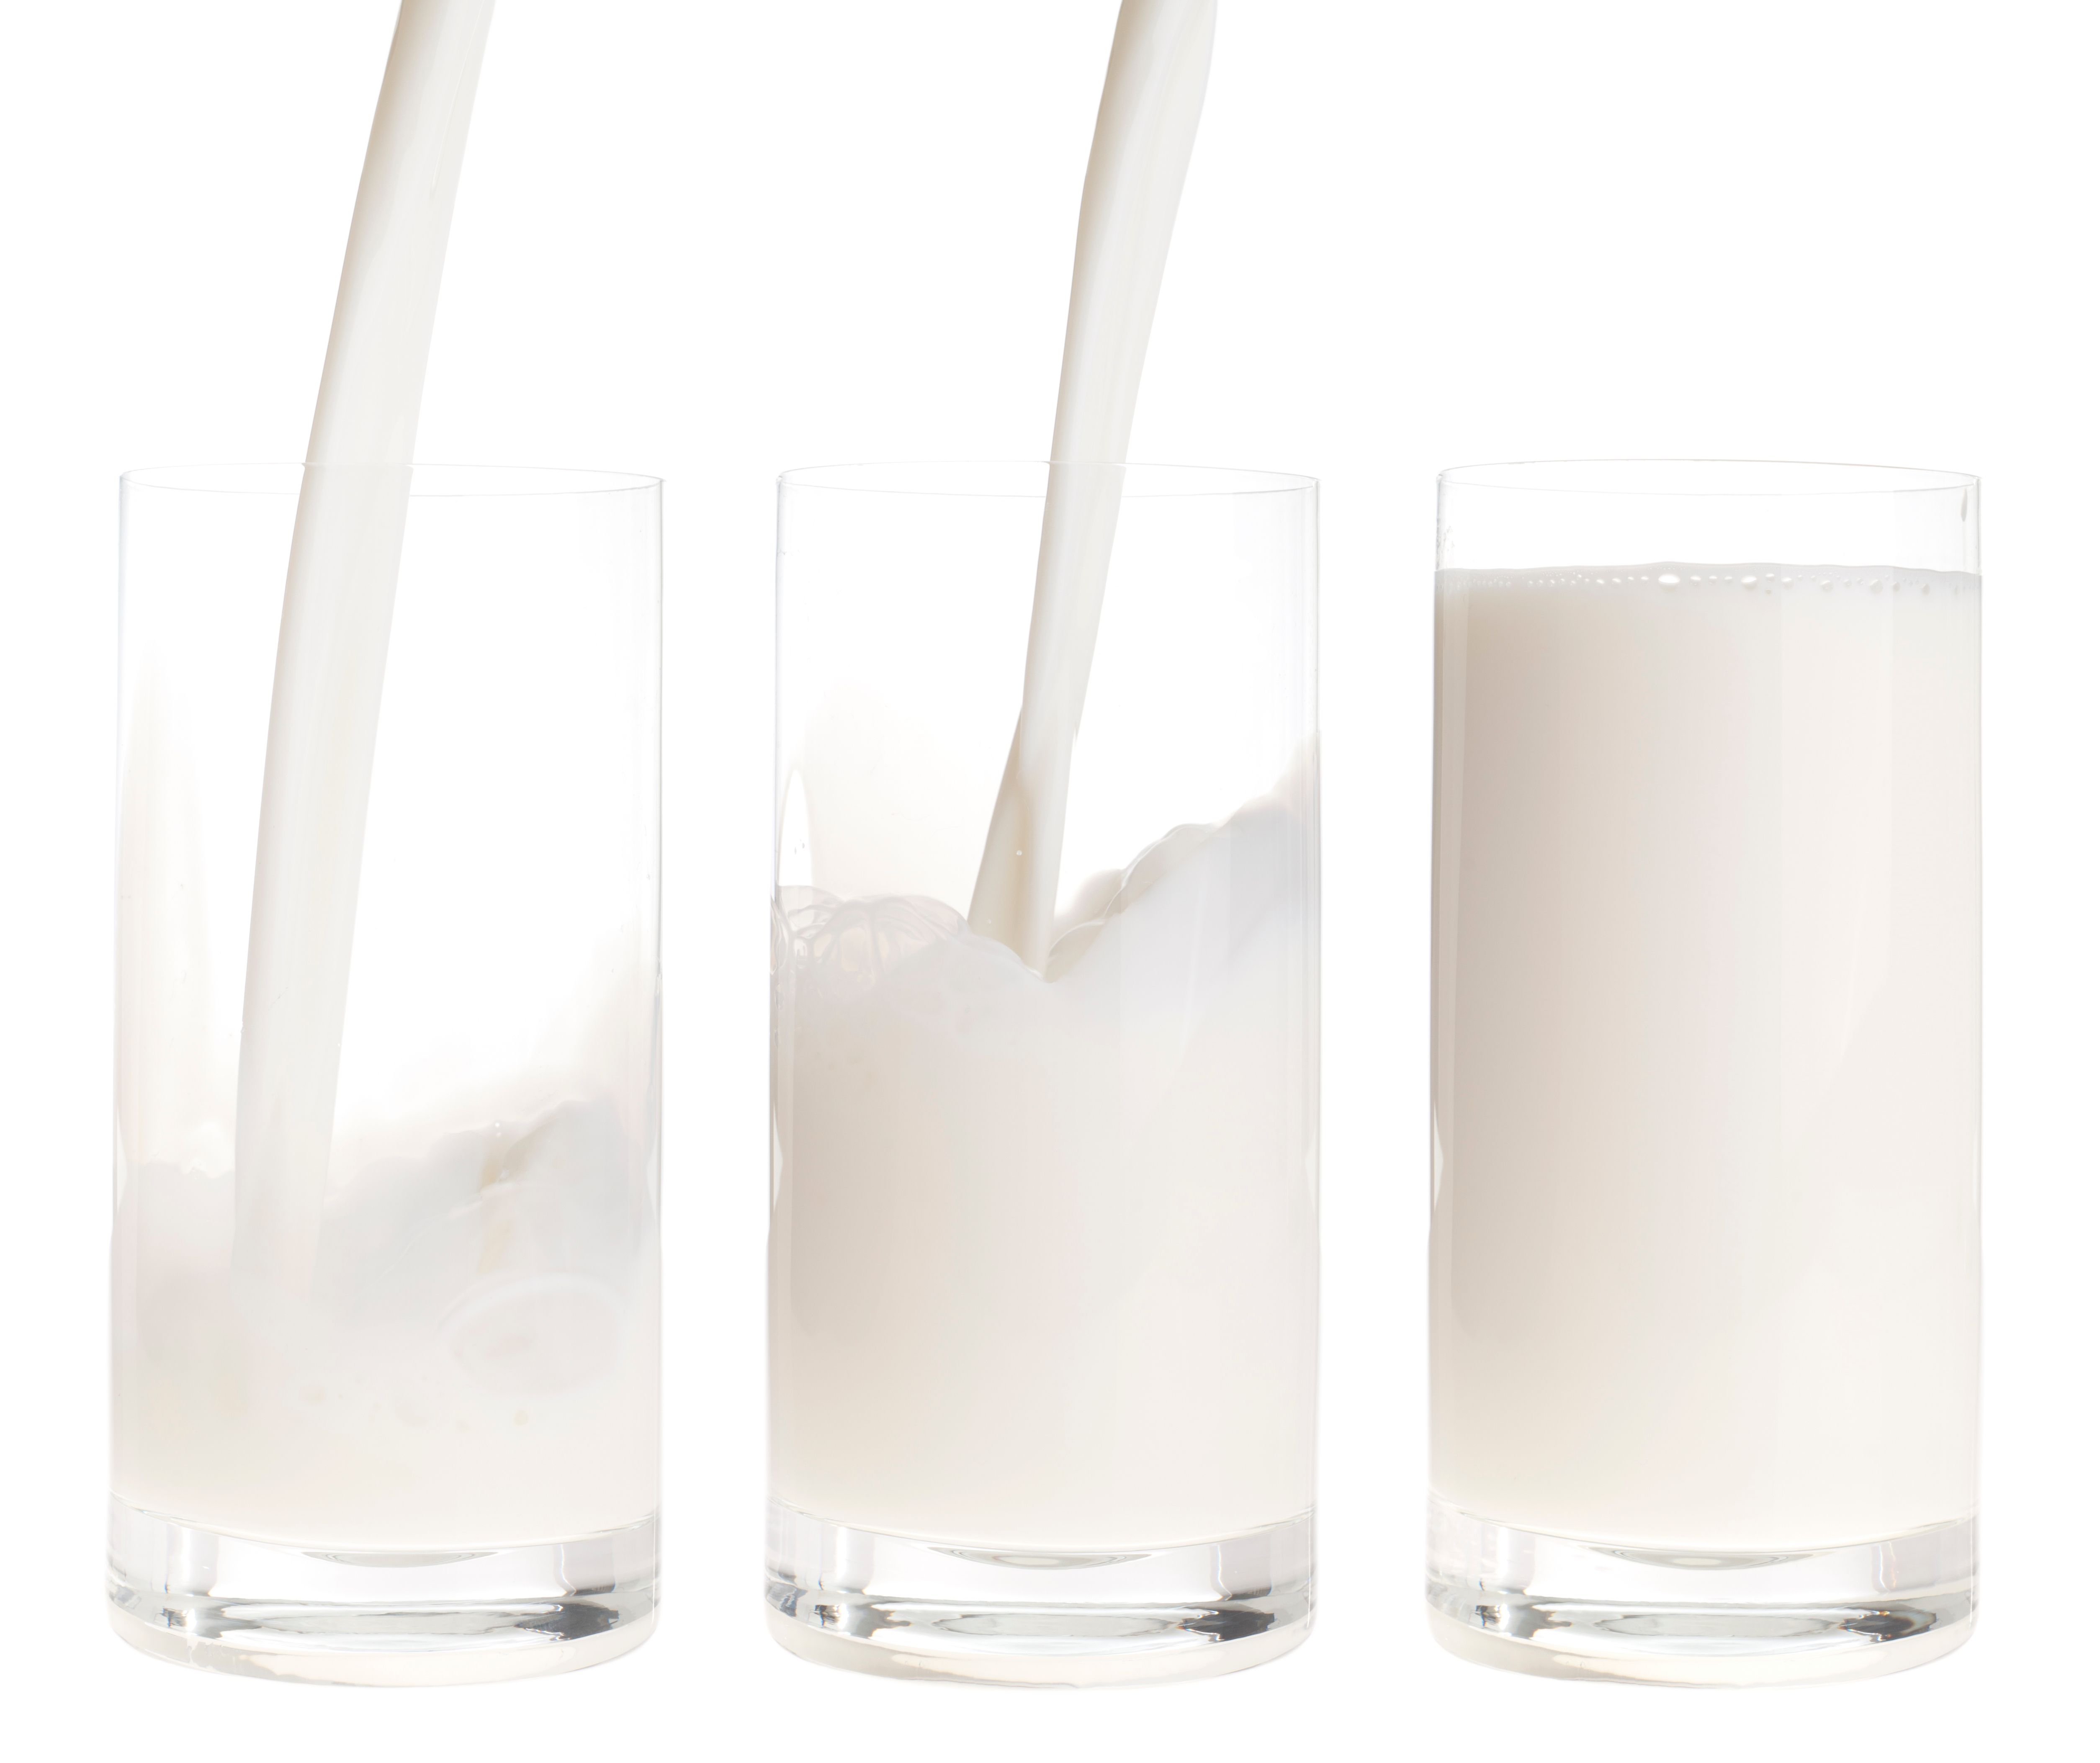 La leche proporciona el 60% de las posibilidades de adquirir calcio en los niños